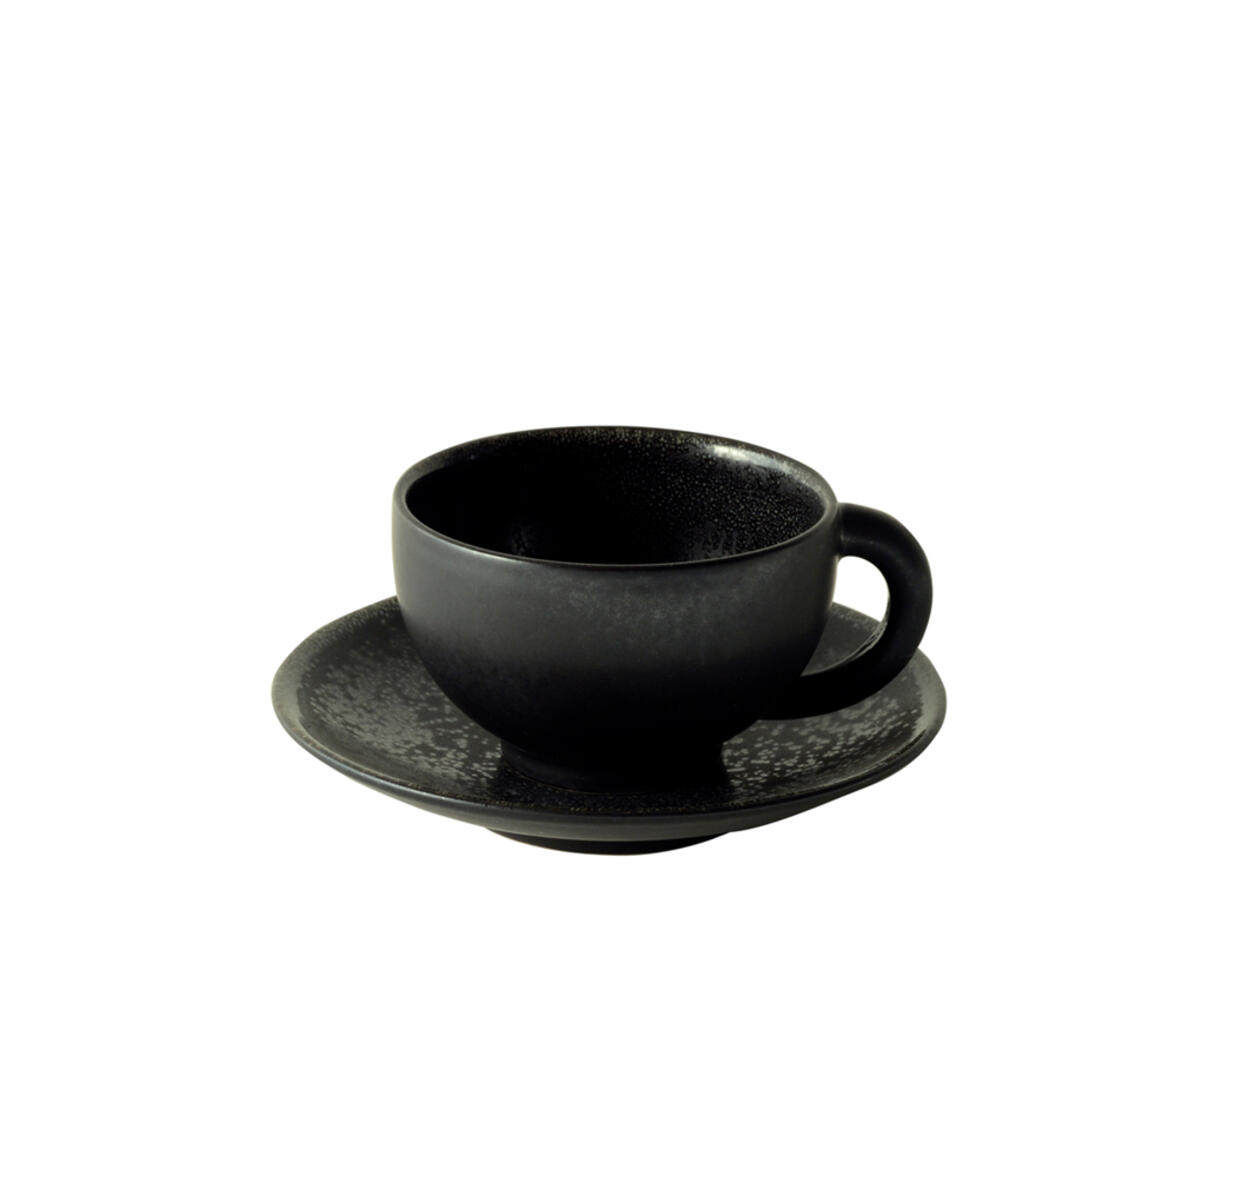 cup & saucer - m  tourron  céleste ceramic manufacturer